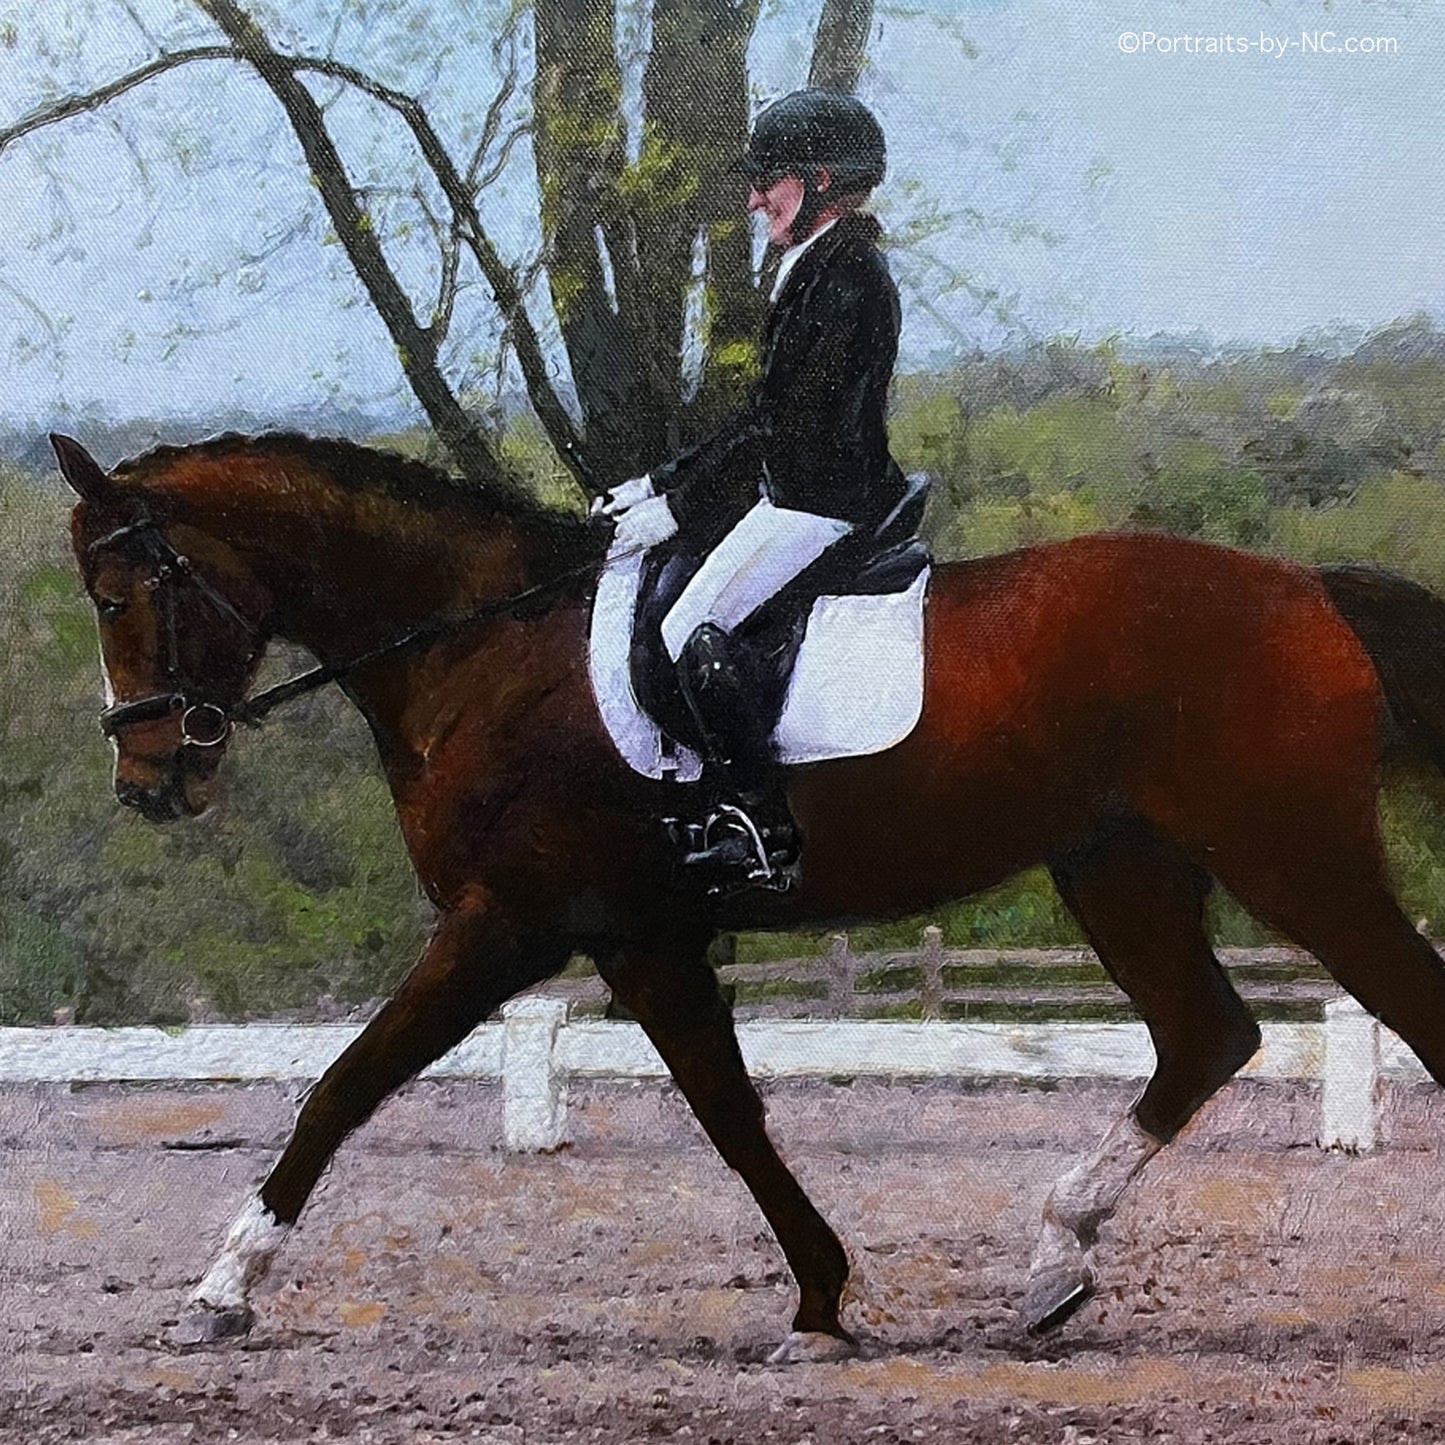 Dutch Warmblood Horse Portrait - Dressage Horse and Rider Portrait